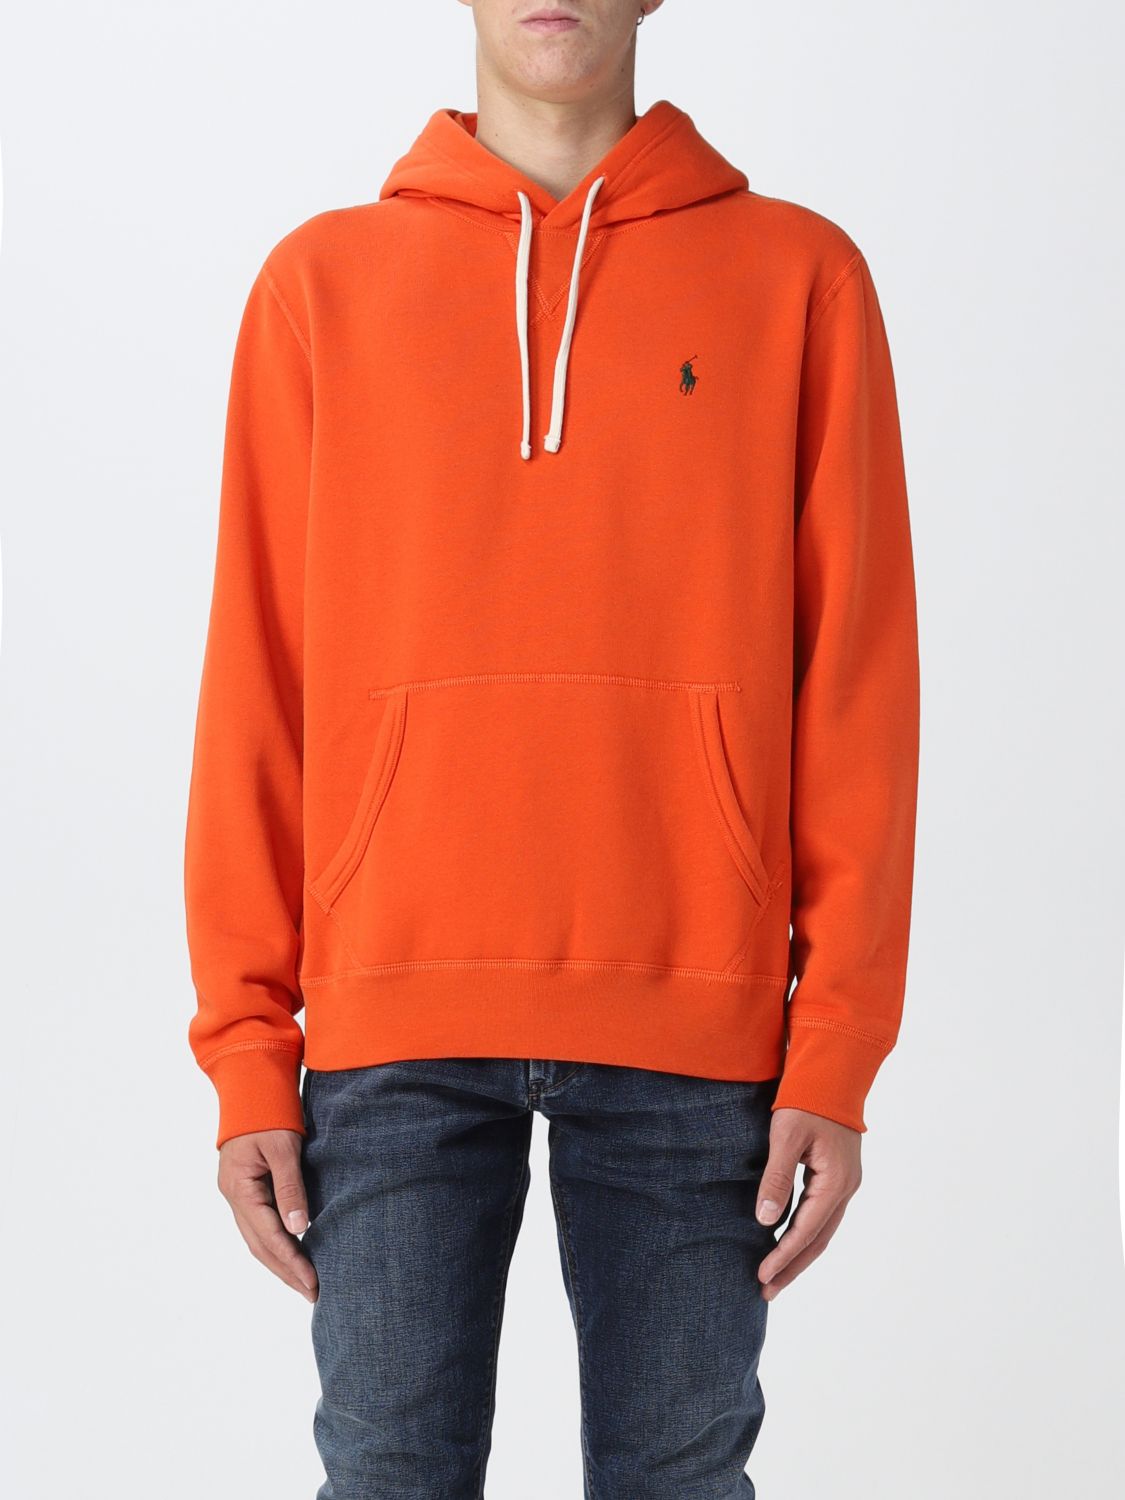 POLO RALPH LAUREN: sweatshirt for man - Orange | Polo Ralph Lauren  sweatshirt 710766778 online on 